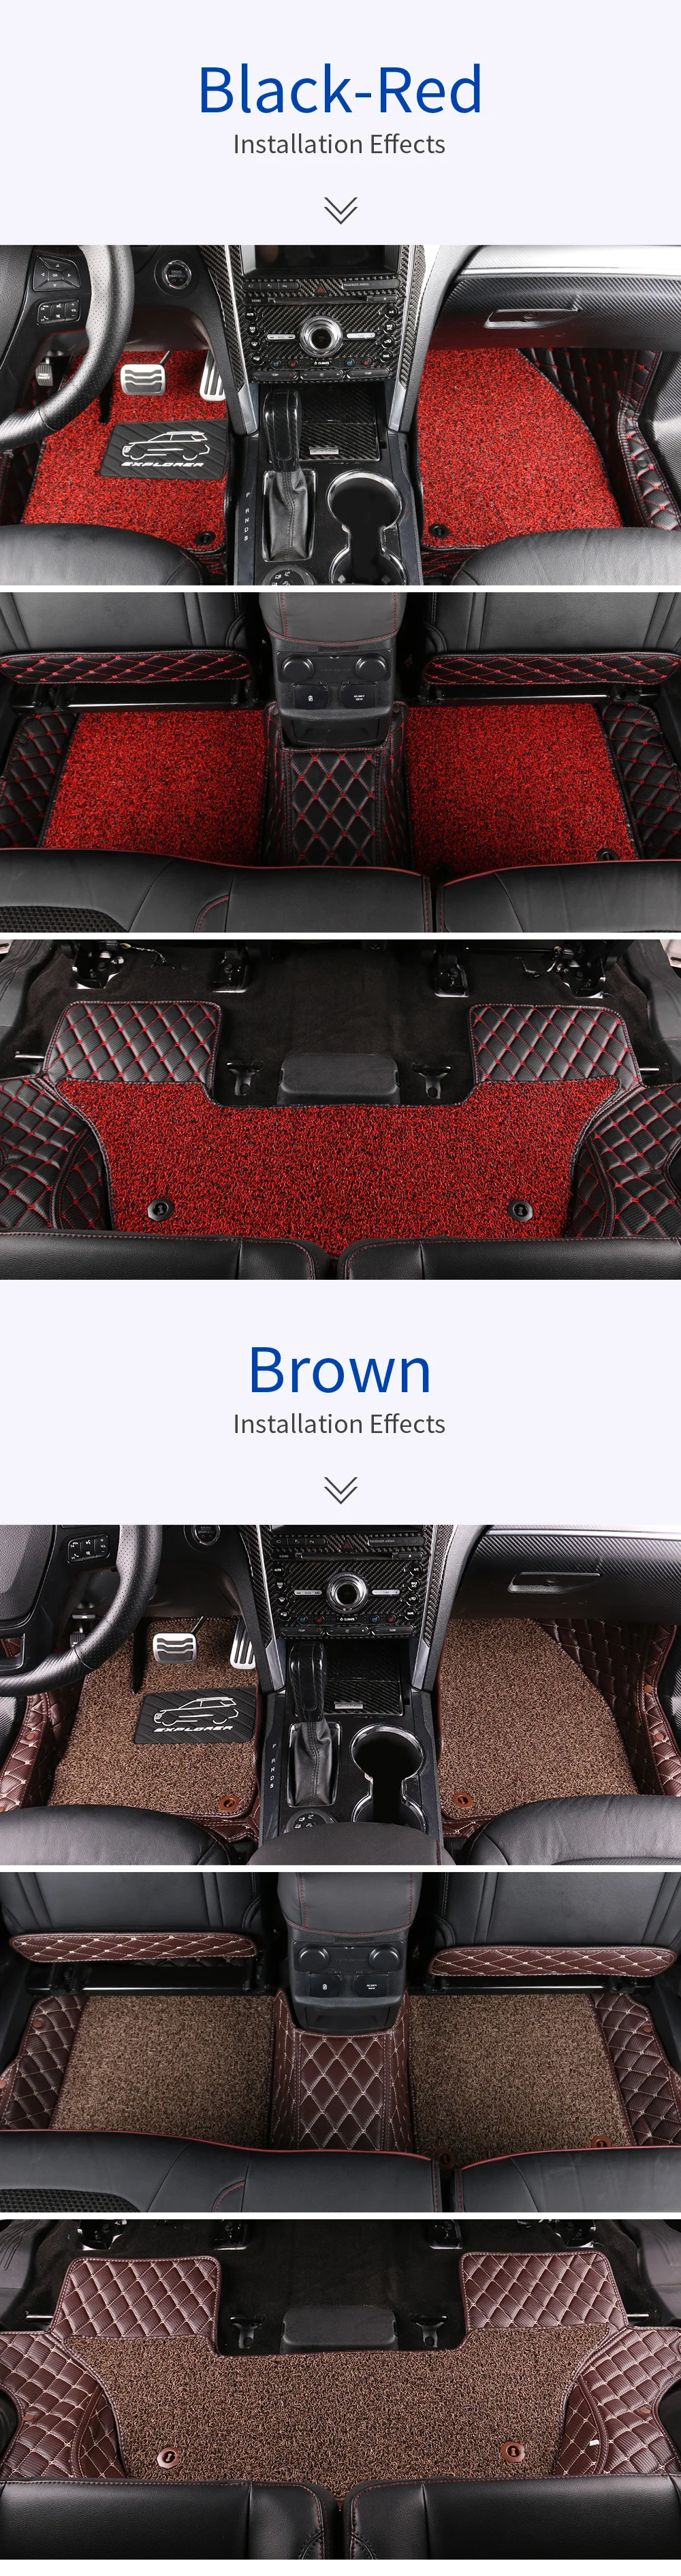 JHO автомобильные аксессуары двойной Слои провод коврики защитный ковры для Ford Explorer